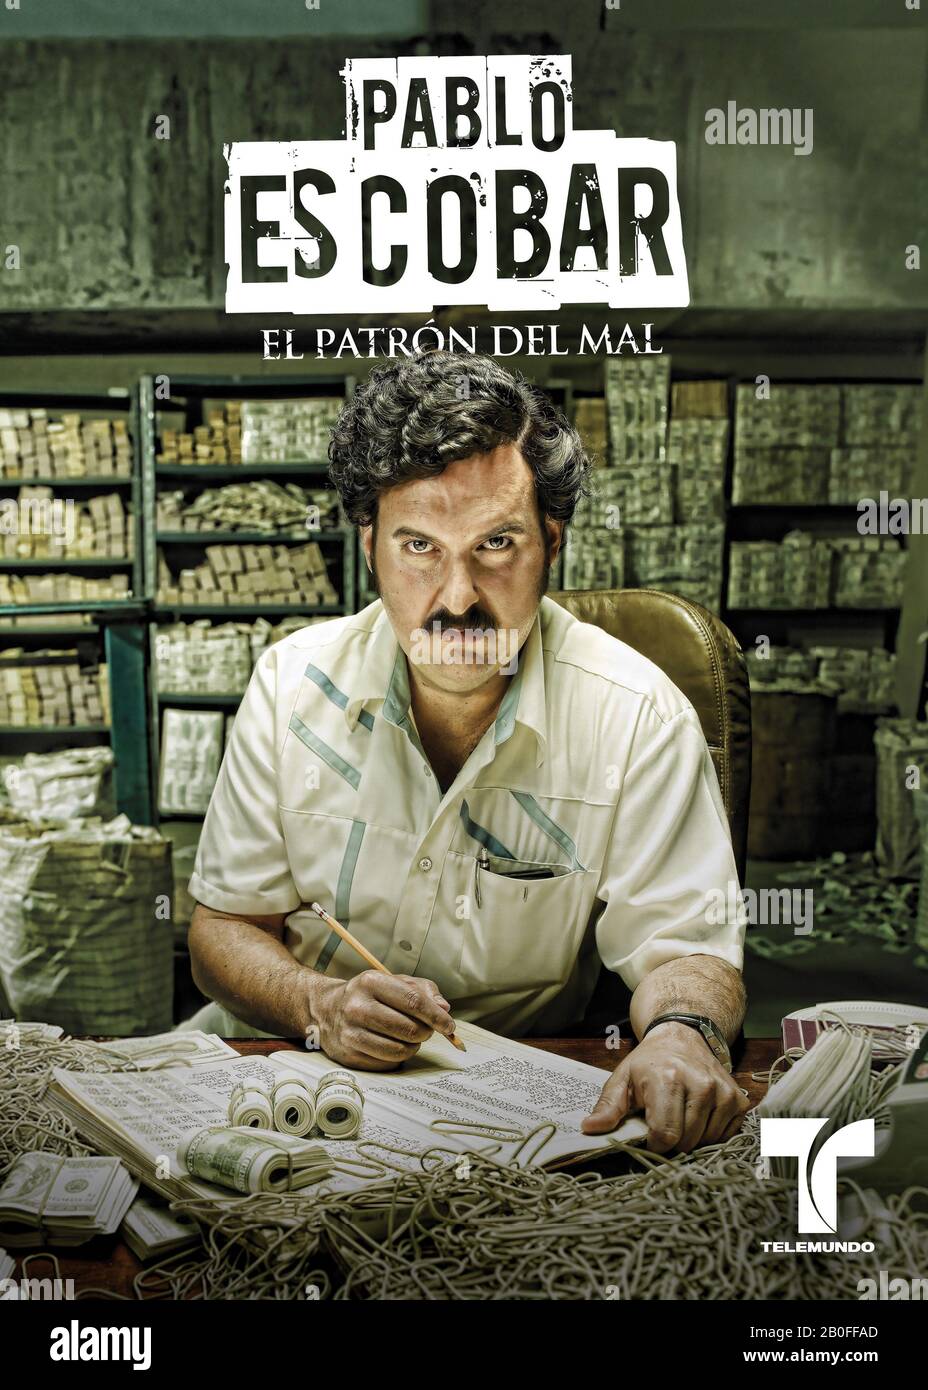 Pablo Escobar: El Patron del Mal TV Series 2012 Colombia Andres Parra Poster  Stock Photo - Alamy